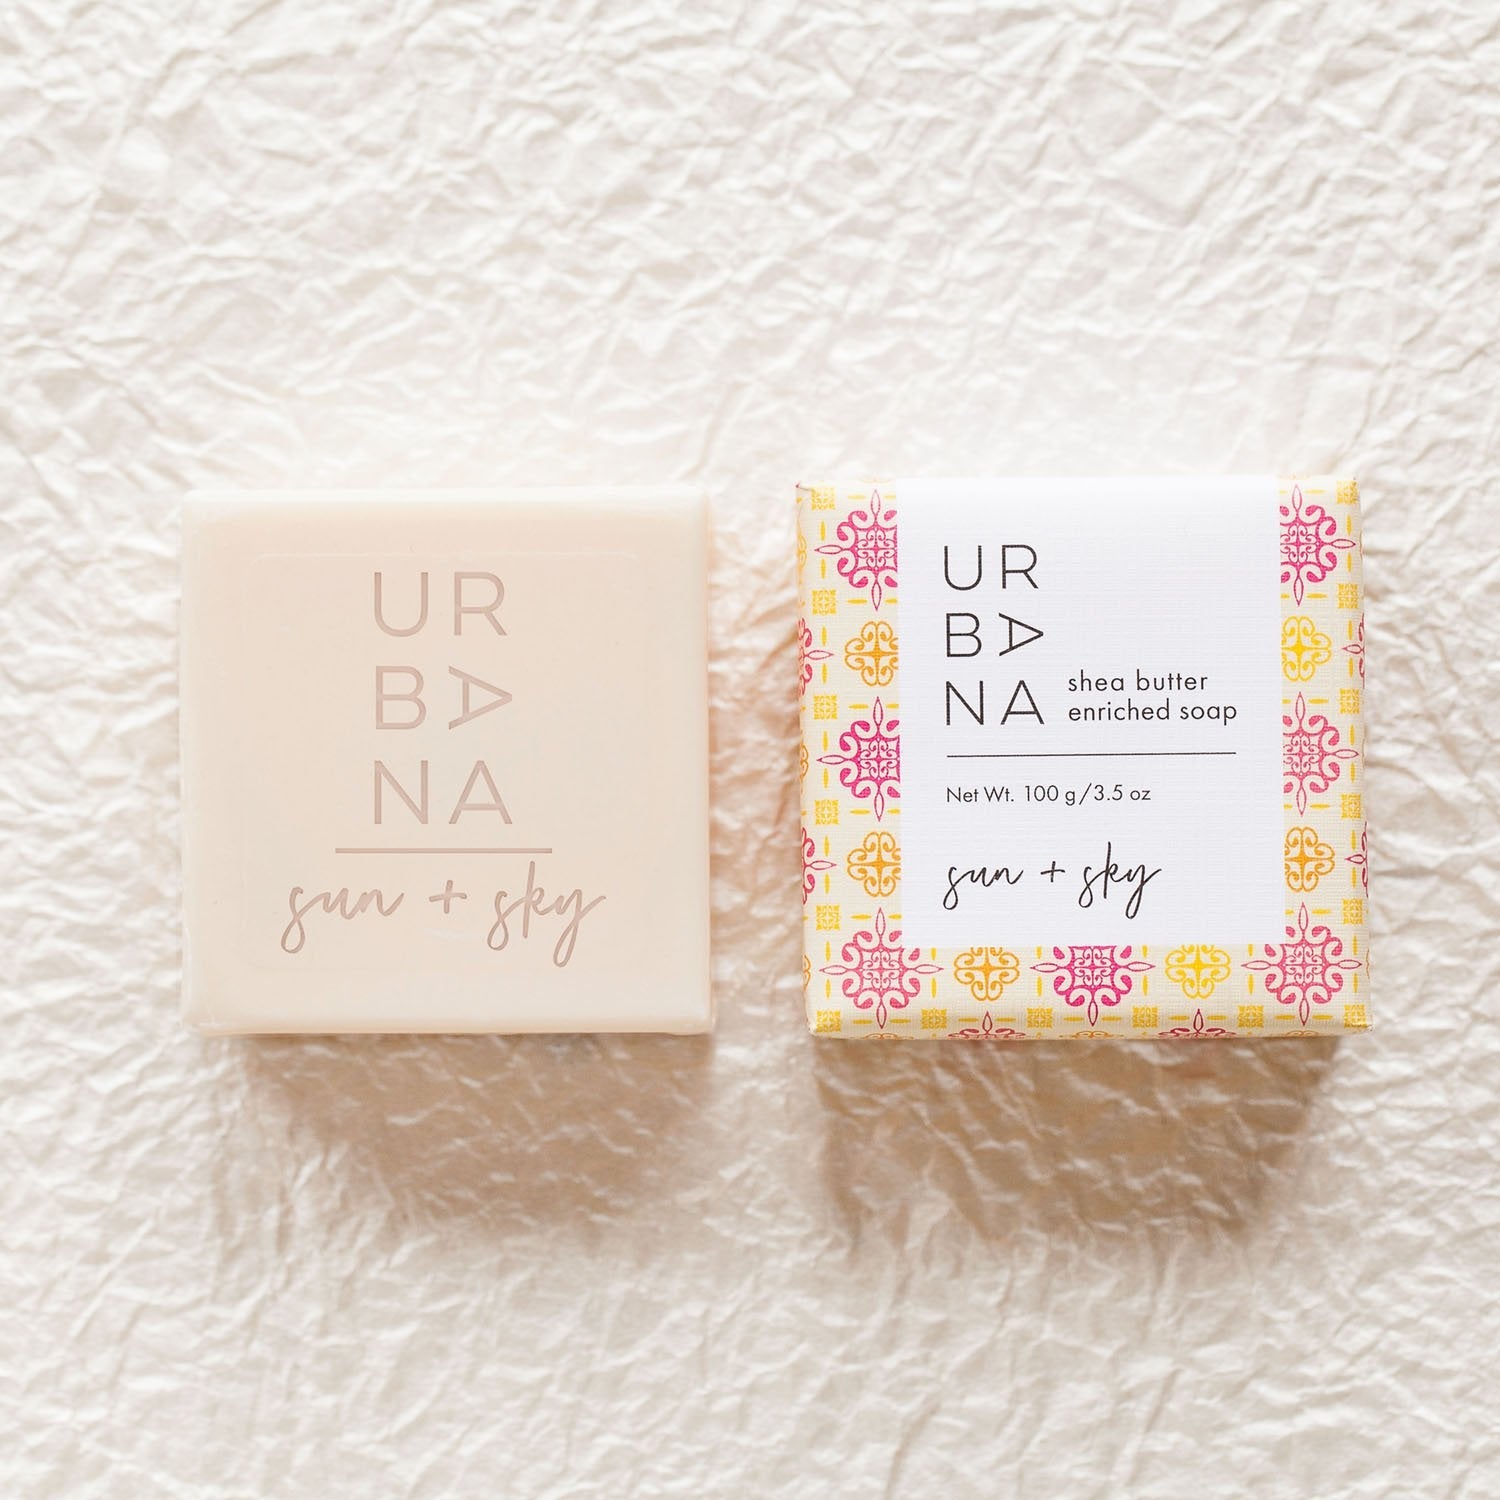 Urbana Bath - The Riviera Towel Company